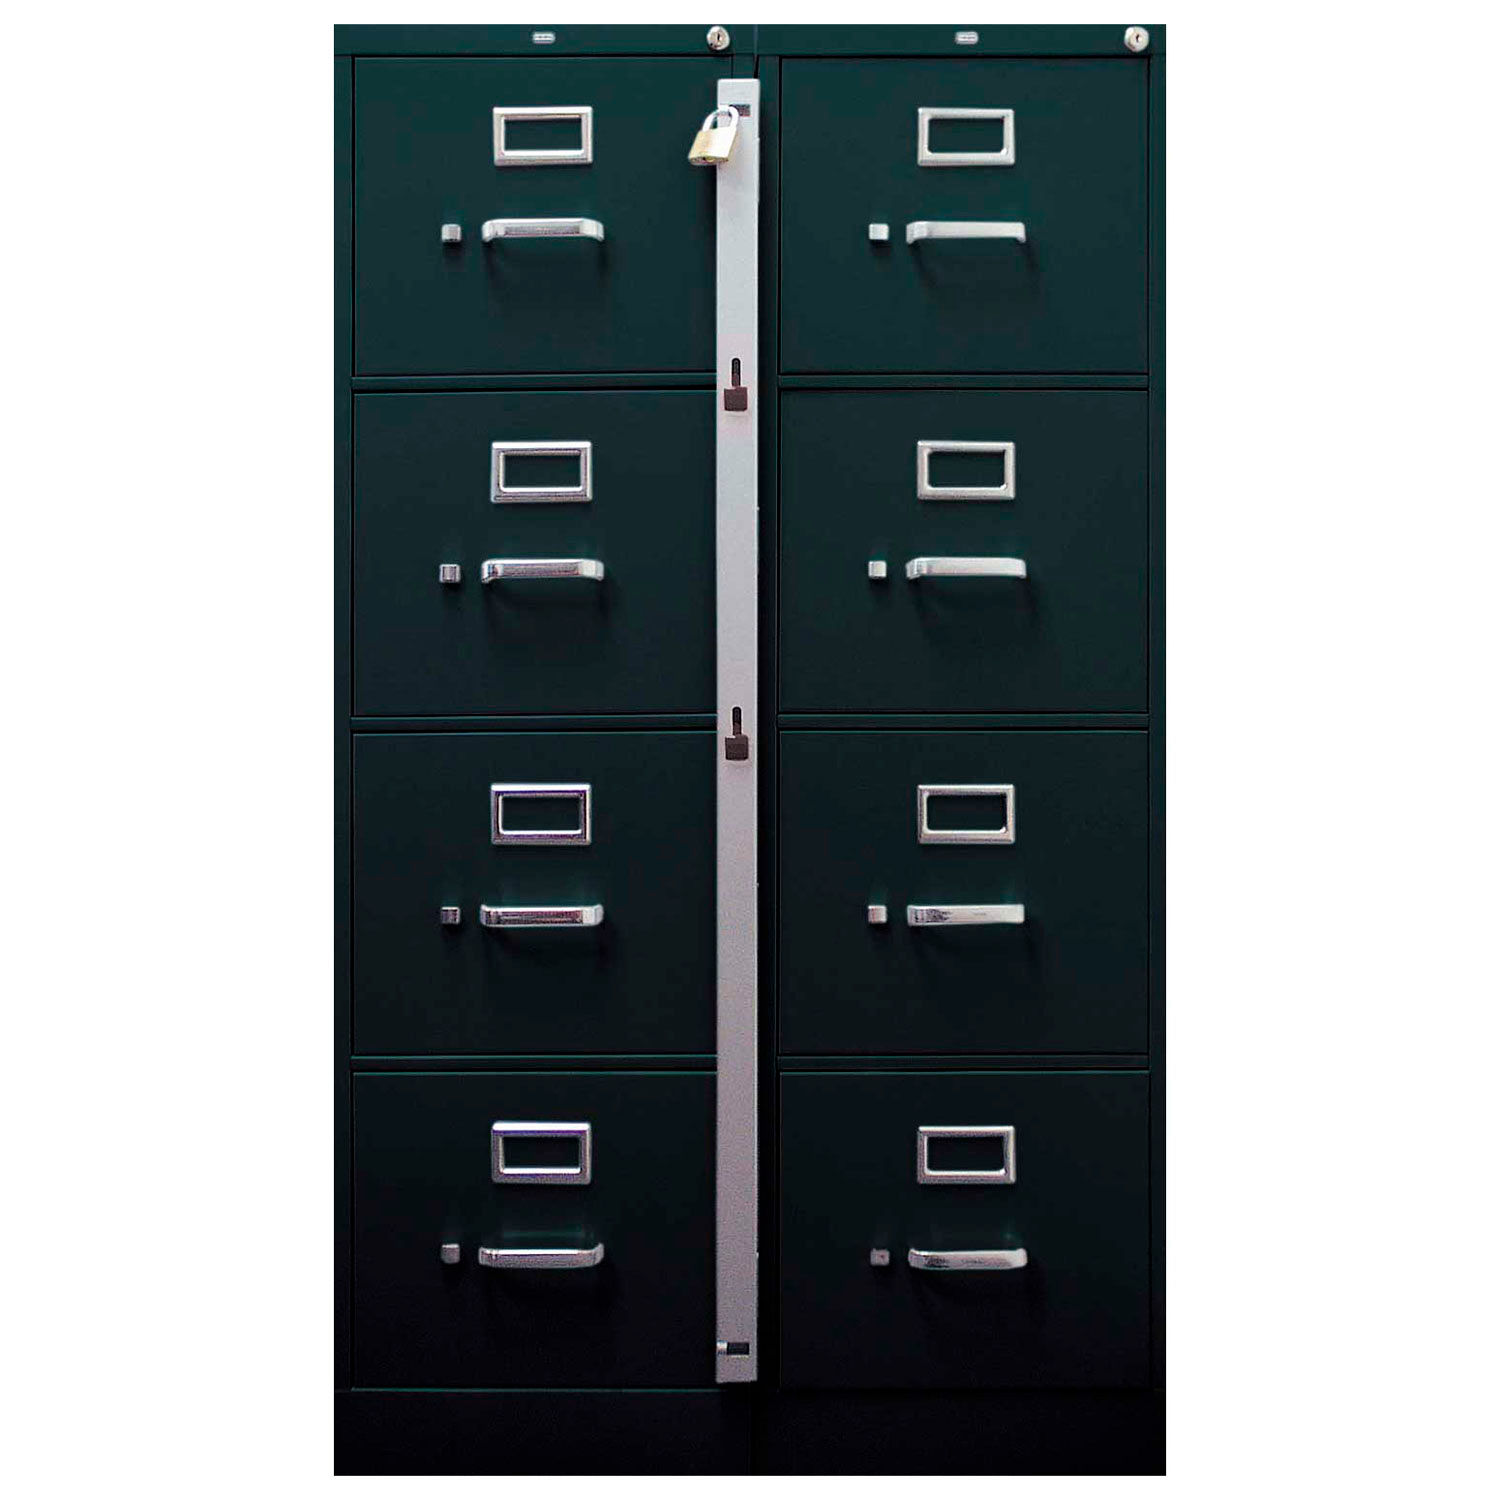 2 drawer locking file cabinet wood